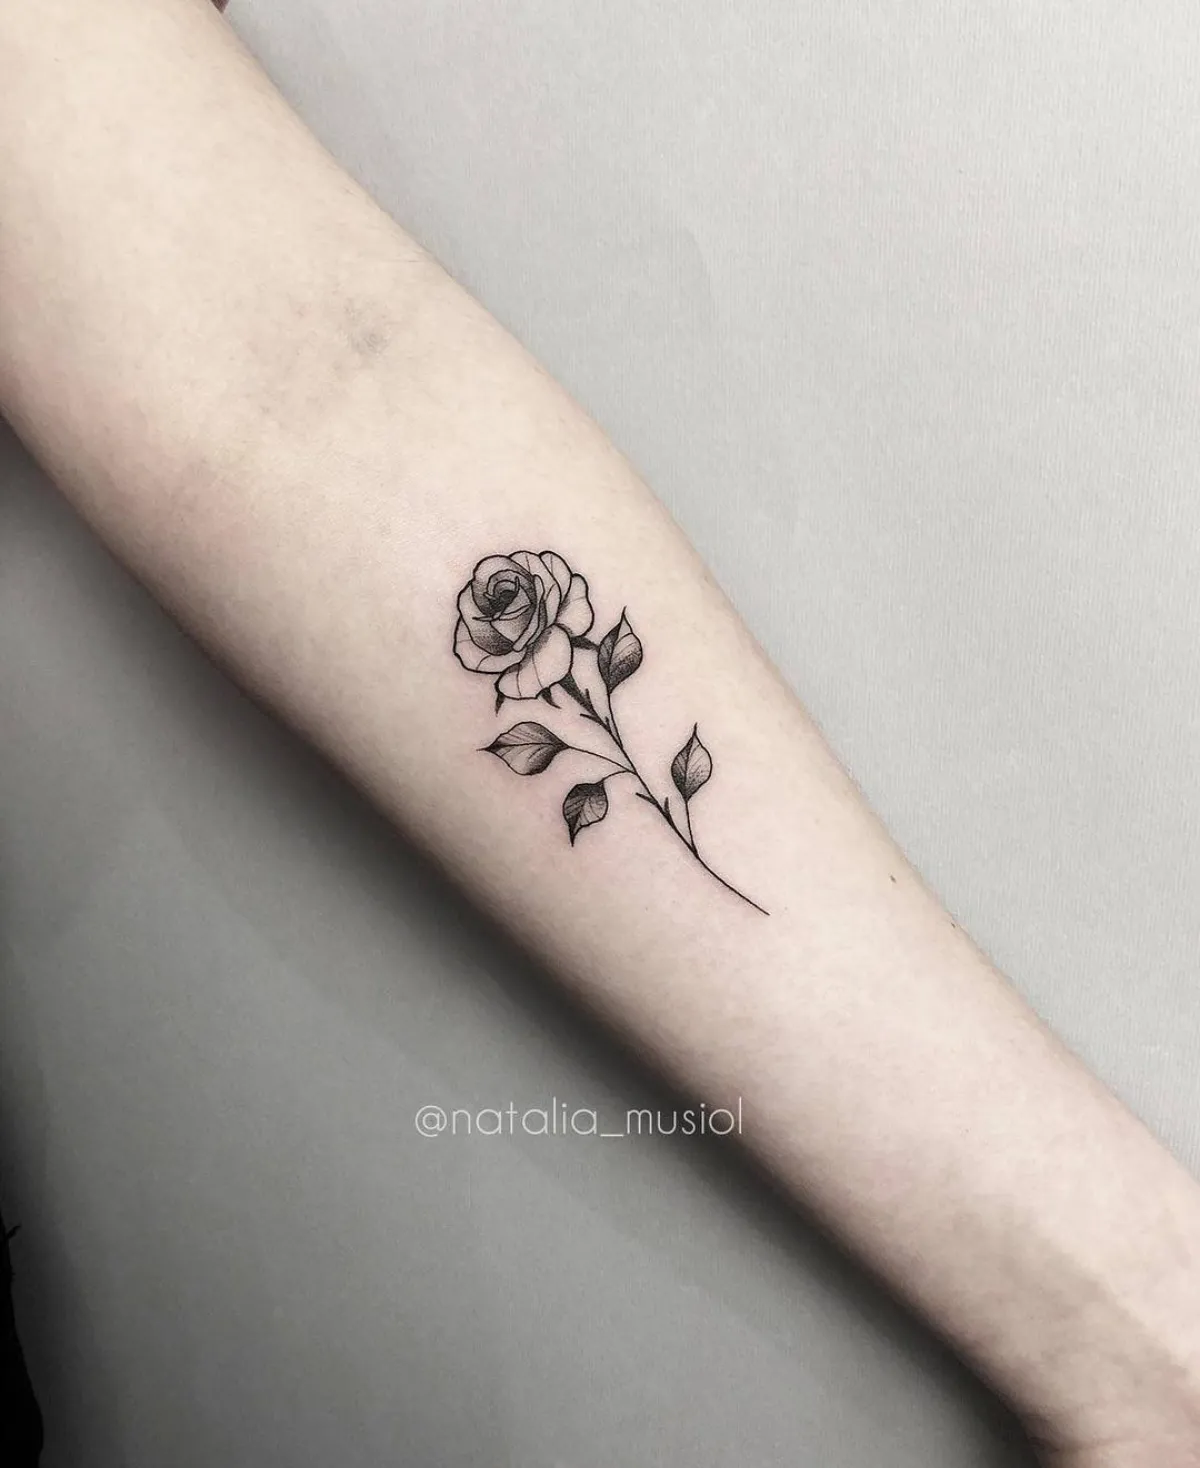 rosen tattoo am unterarm kleine blume realistisches design